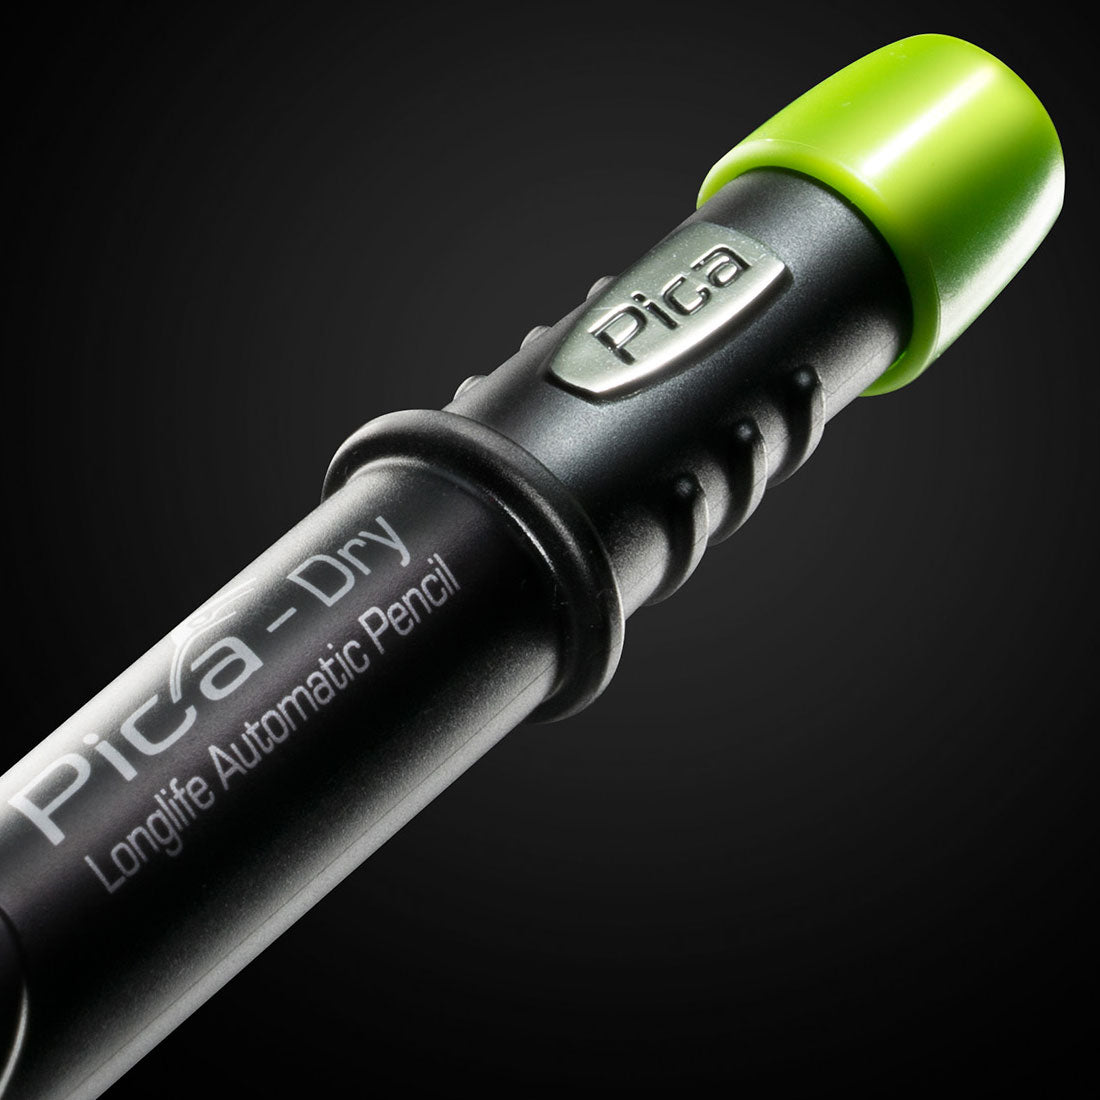 Pica Dry Graphite Pen/Pencil 3030 + 4030 Graphite REFILL pack (10)  689788964263